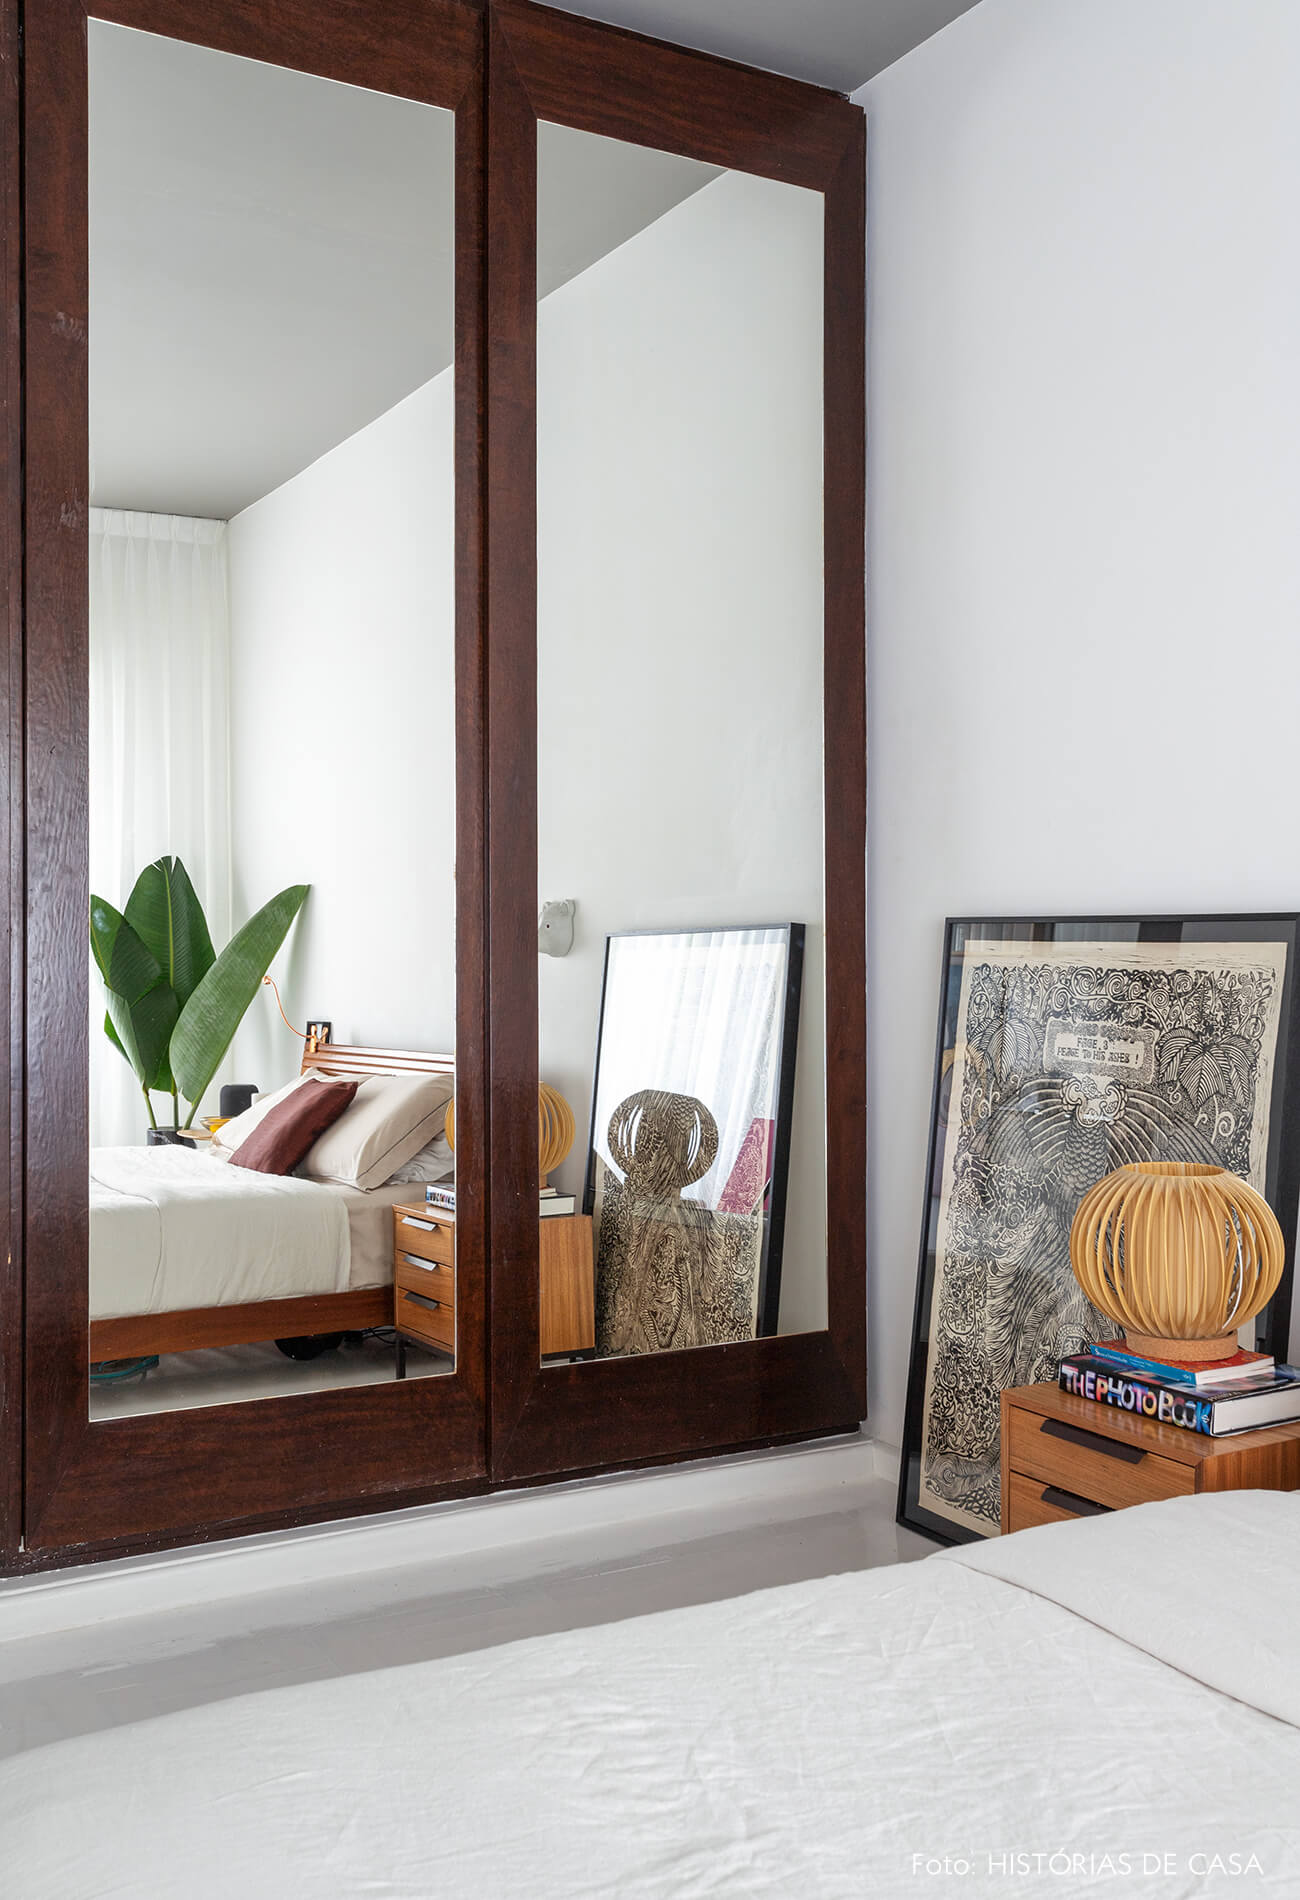 Apartamento escandinavo, quarto com armário espelhado